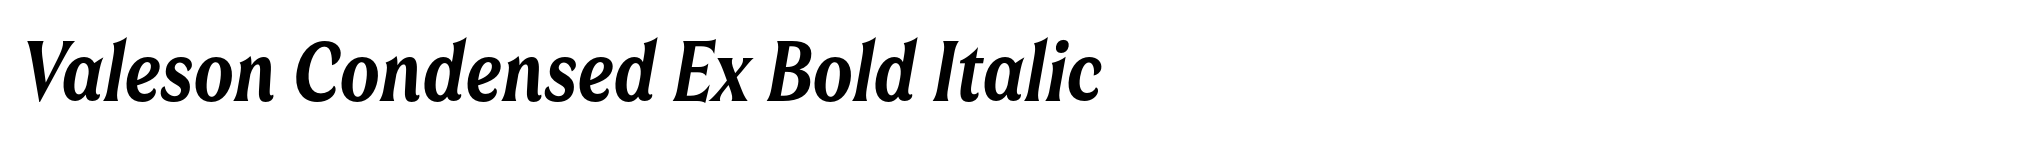 Valeson Condensed Ex Bold Italic image